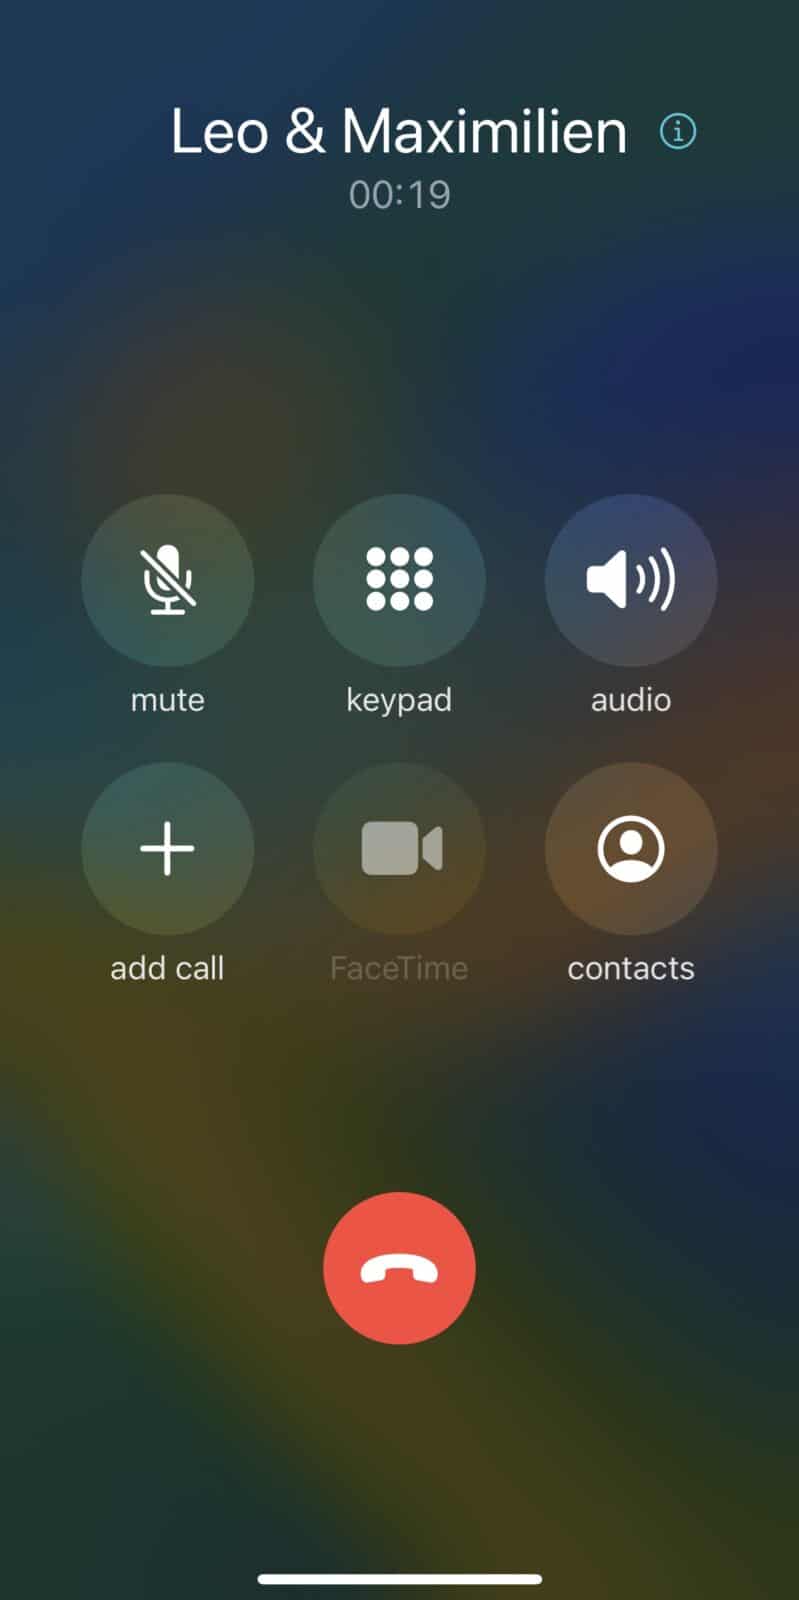 Astuce enregistrer un appel sur iPhone sans application troisième étape